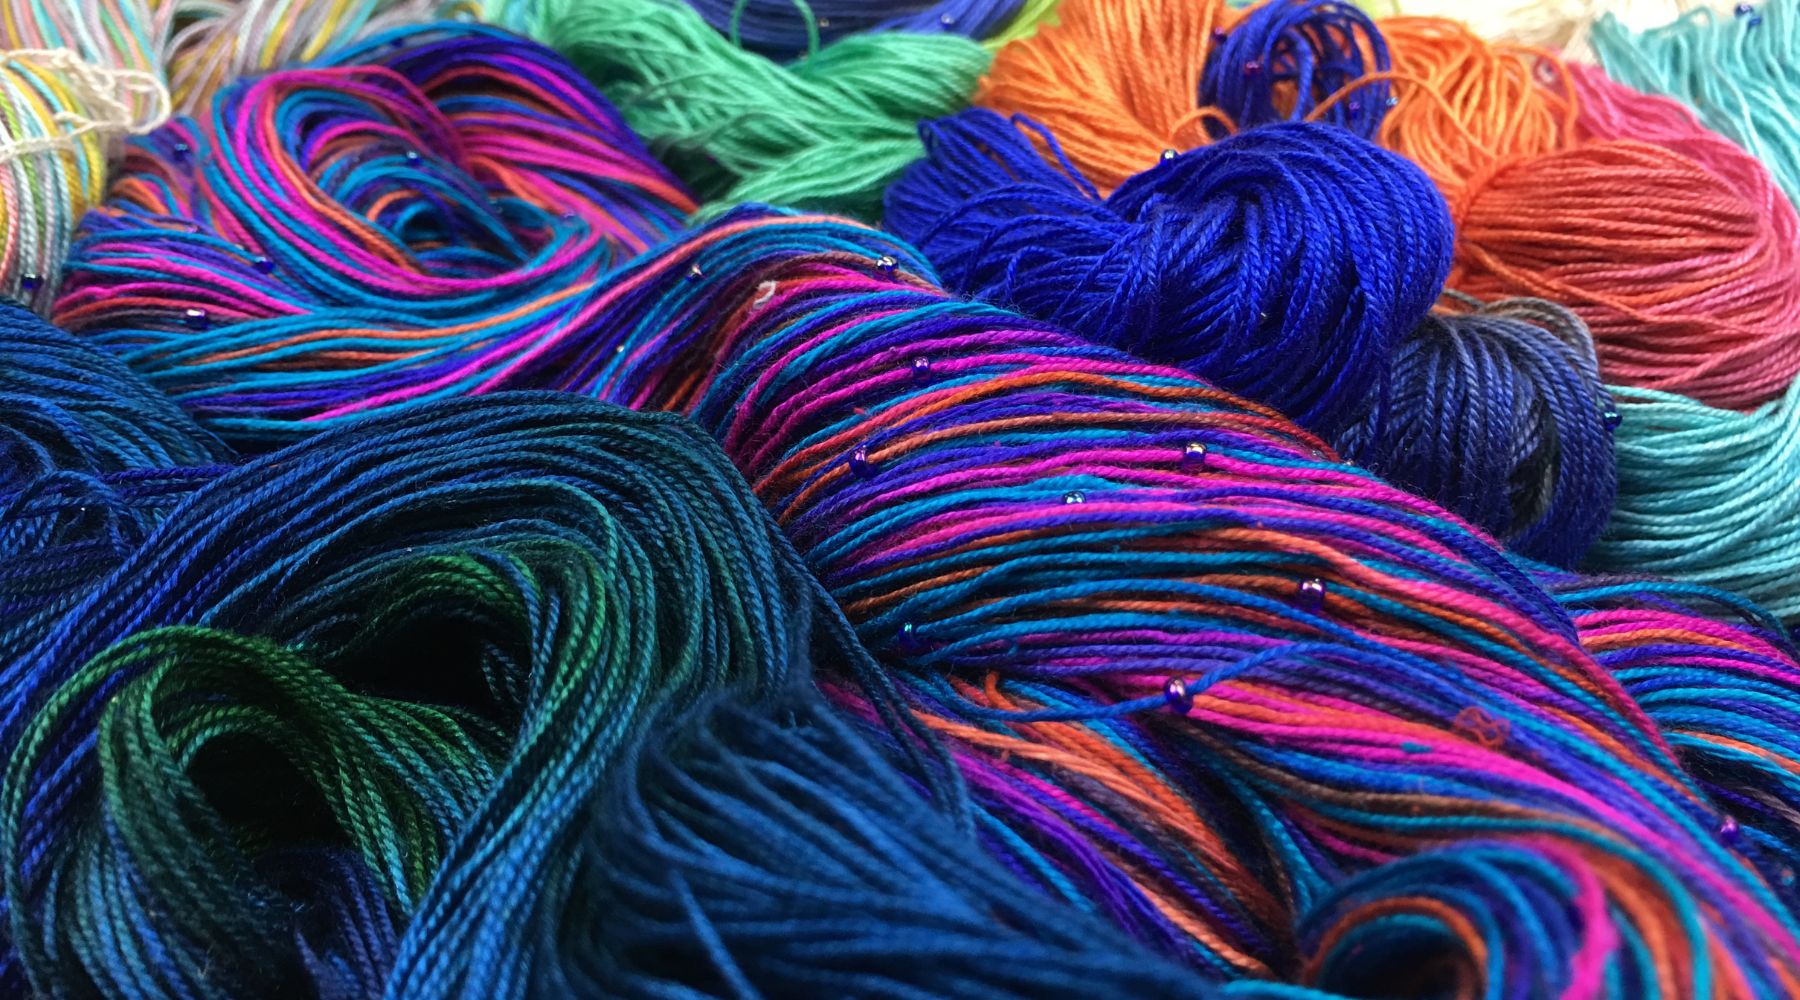 What Is Crochet Yarn Called? – Darn Good Yarn